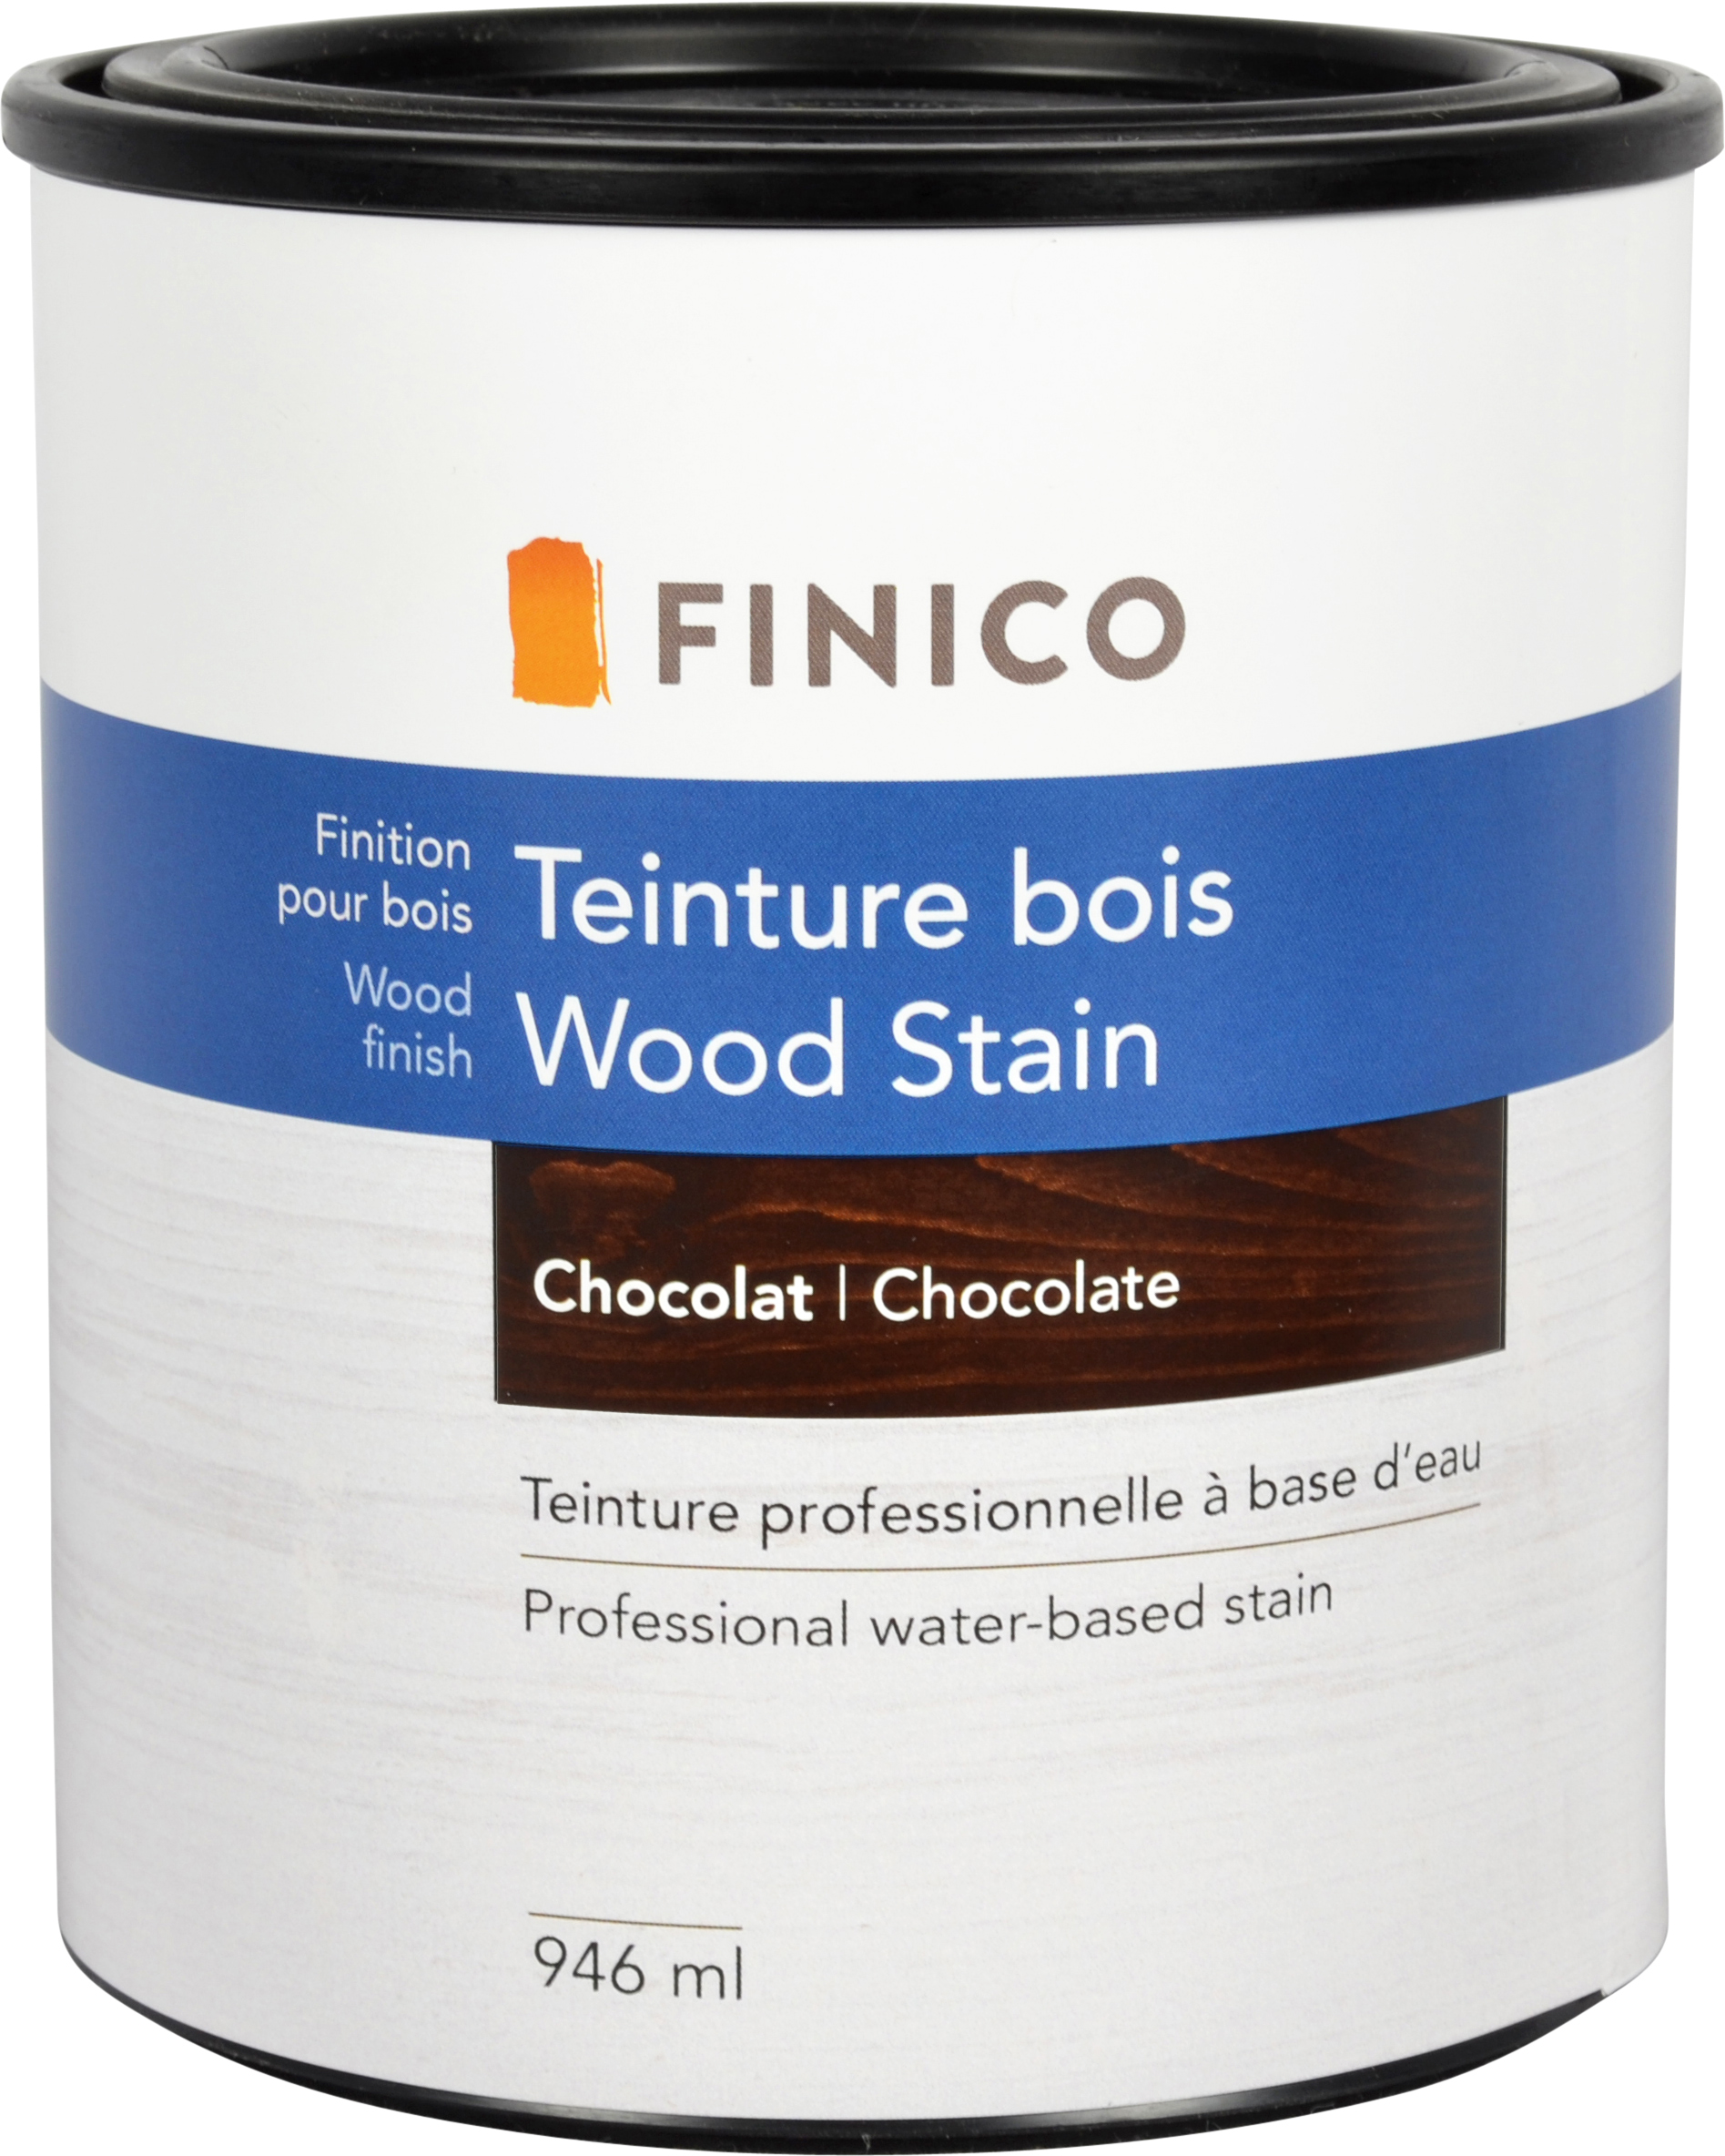 Teinture bois - Finico - Ardec - Produits pour bois